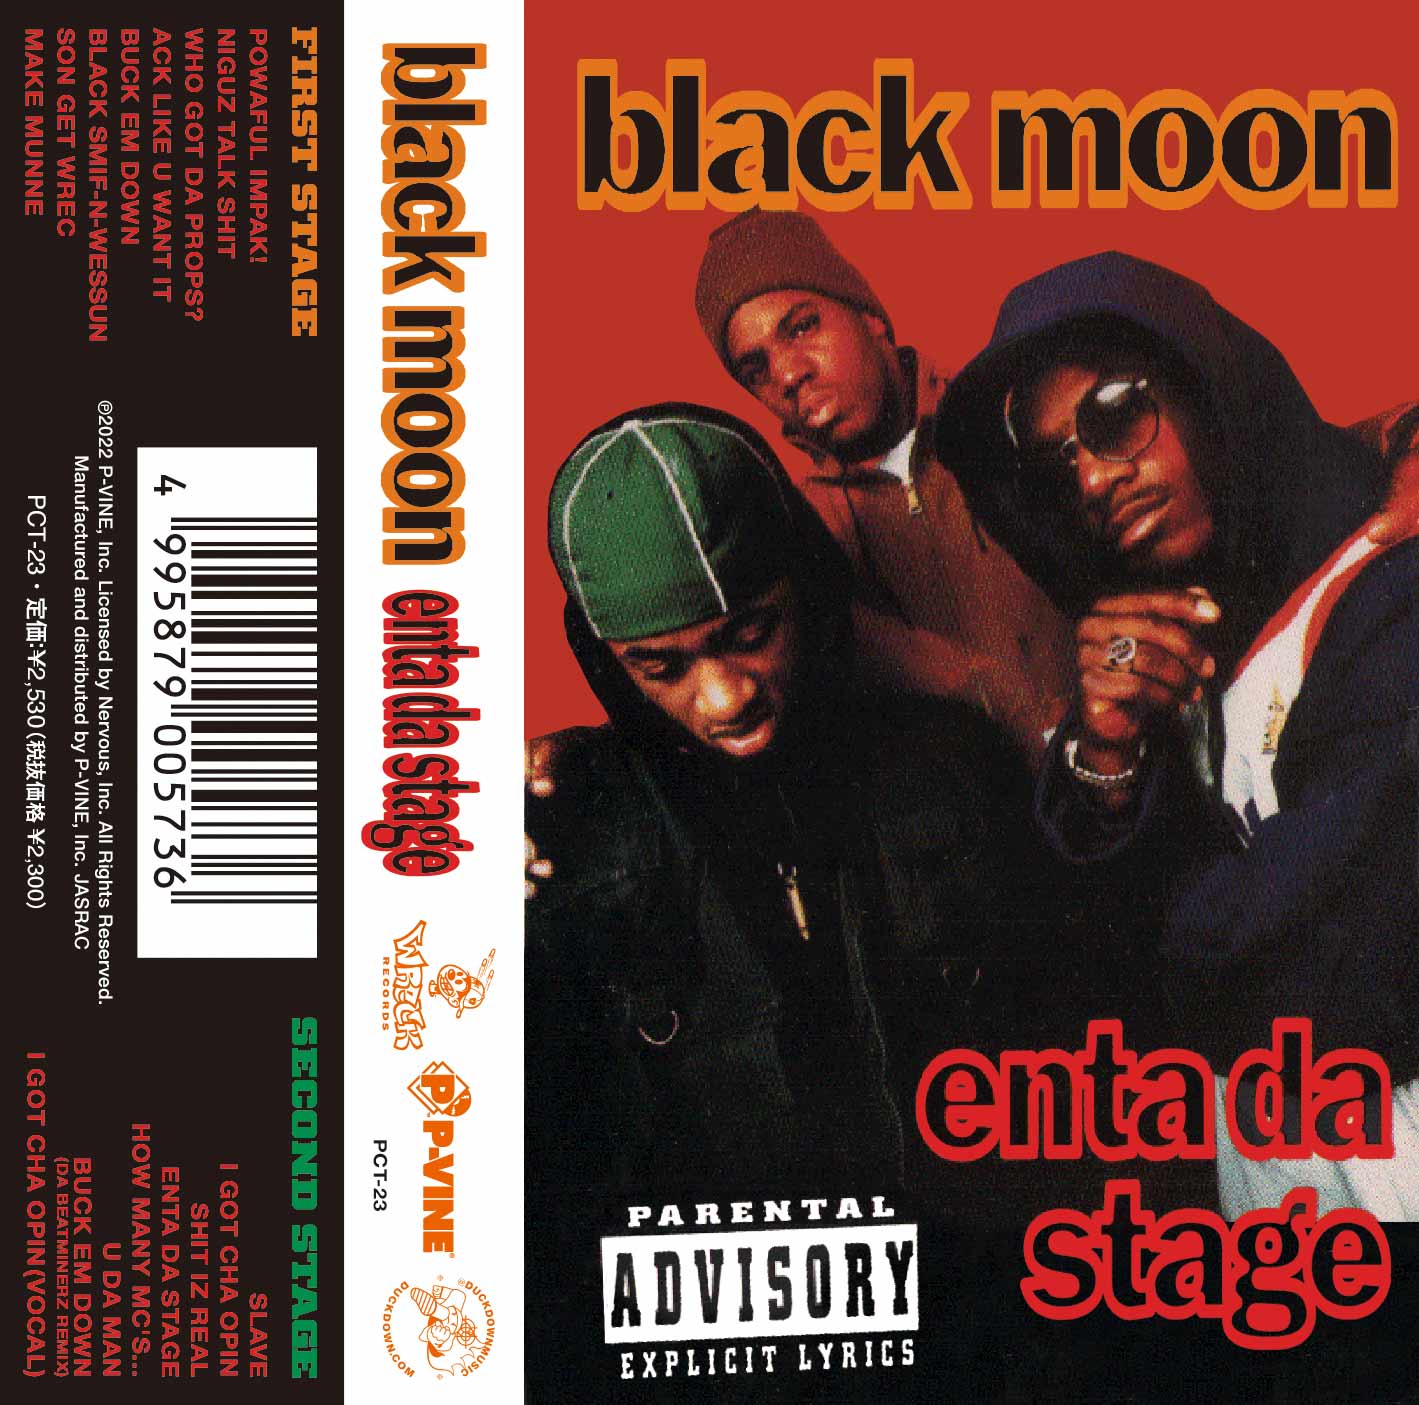 BLACK MOON「Enta Da Stage」